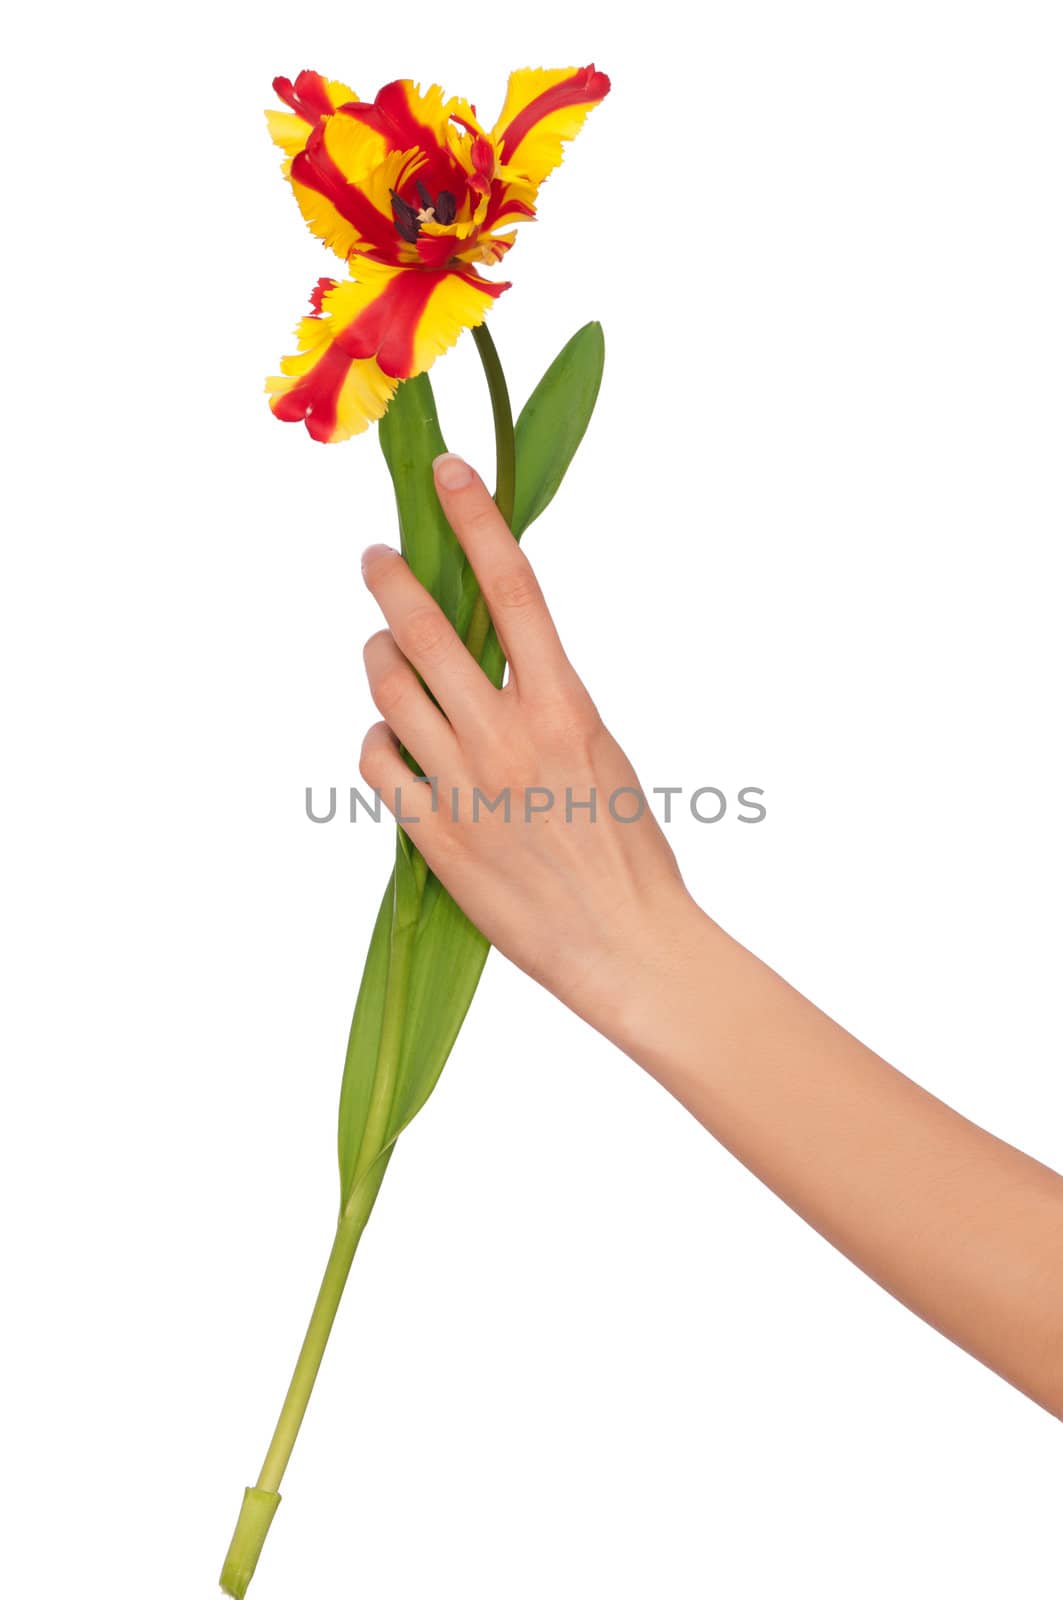 colored tulip by merzavka